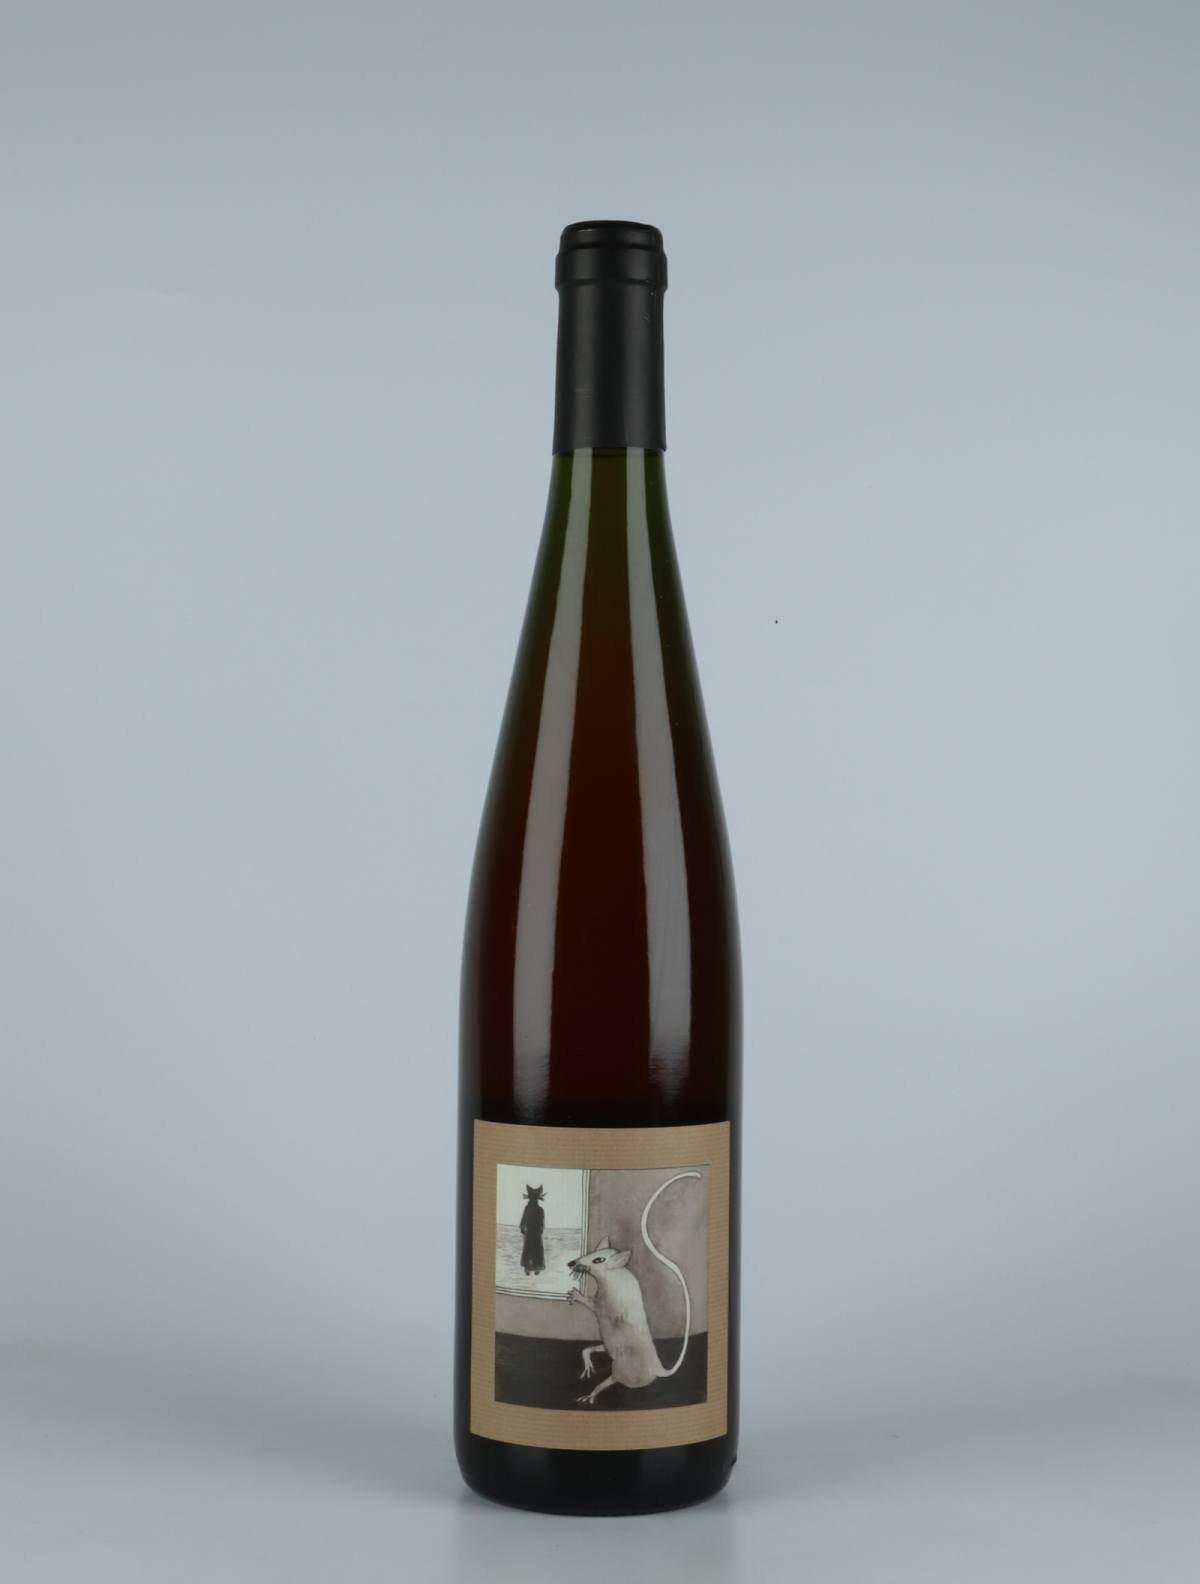 A bottle 2021 Quand le Chat n'est pas la Orange wine from Domaine Rietsch, Alsace in France